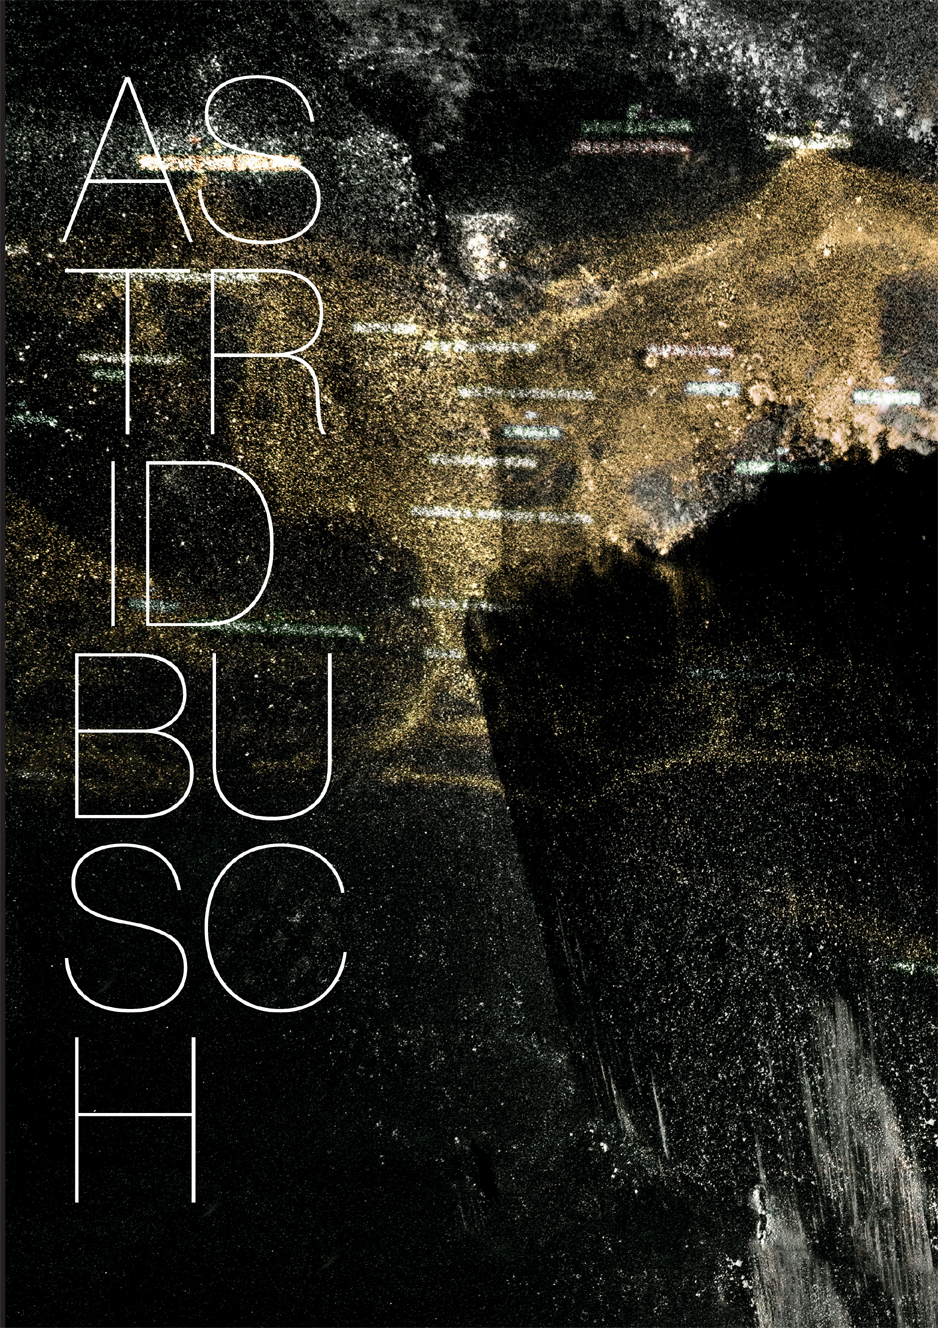 Astrid Busch – World in Minds